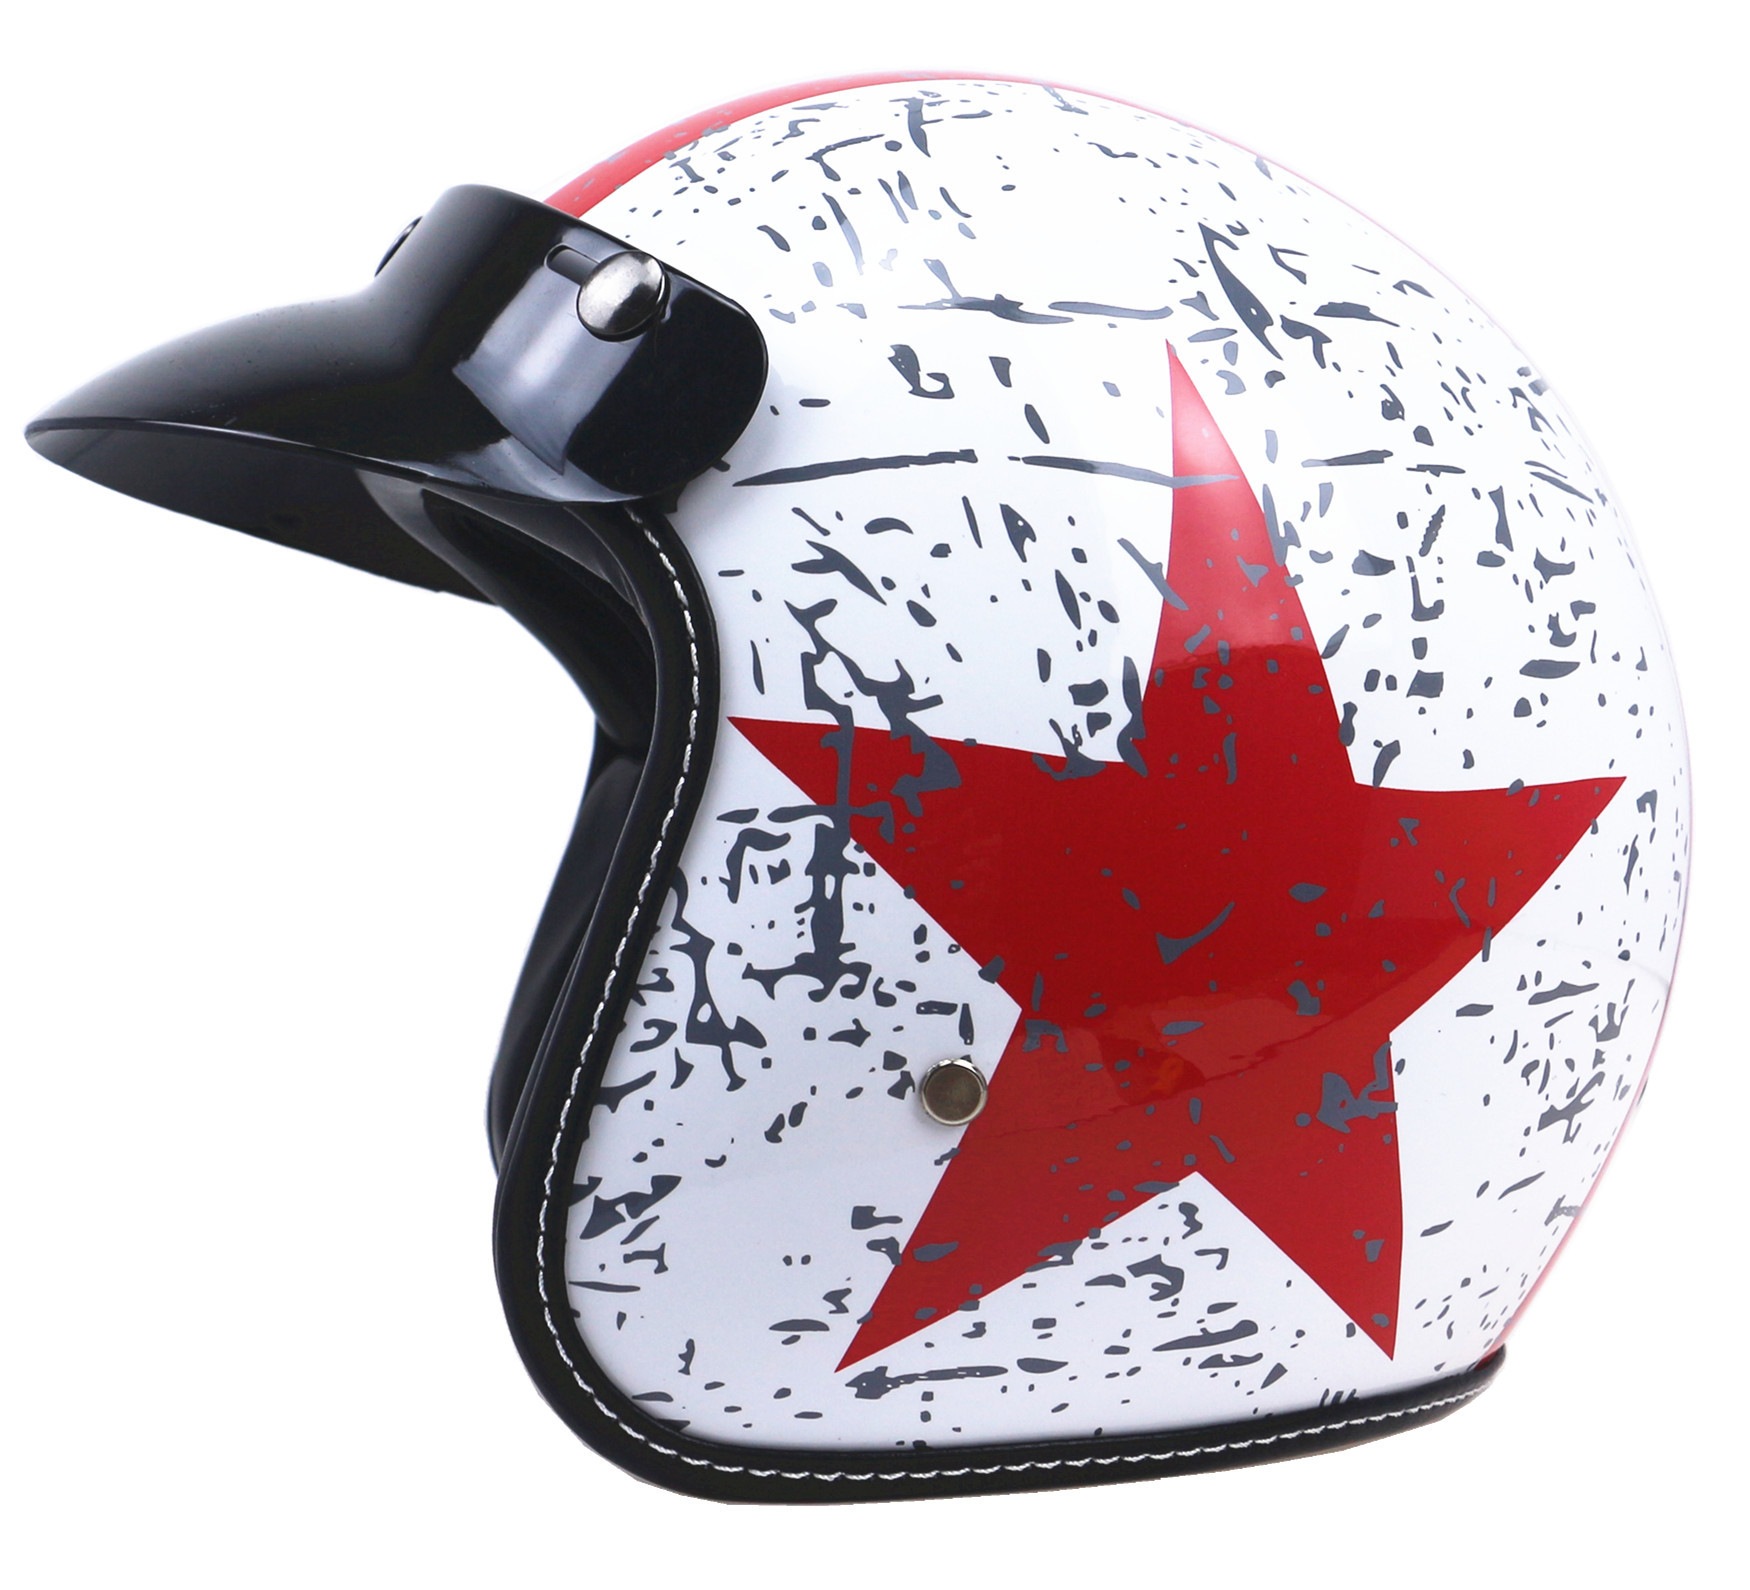 轻量化设计机车头盔复古摩托车头盔太子头盔重量仅800g左右